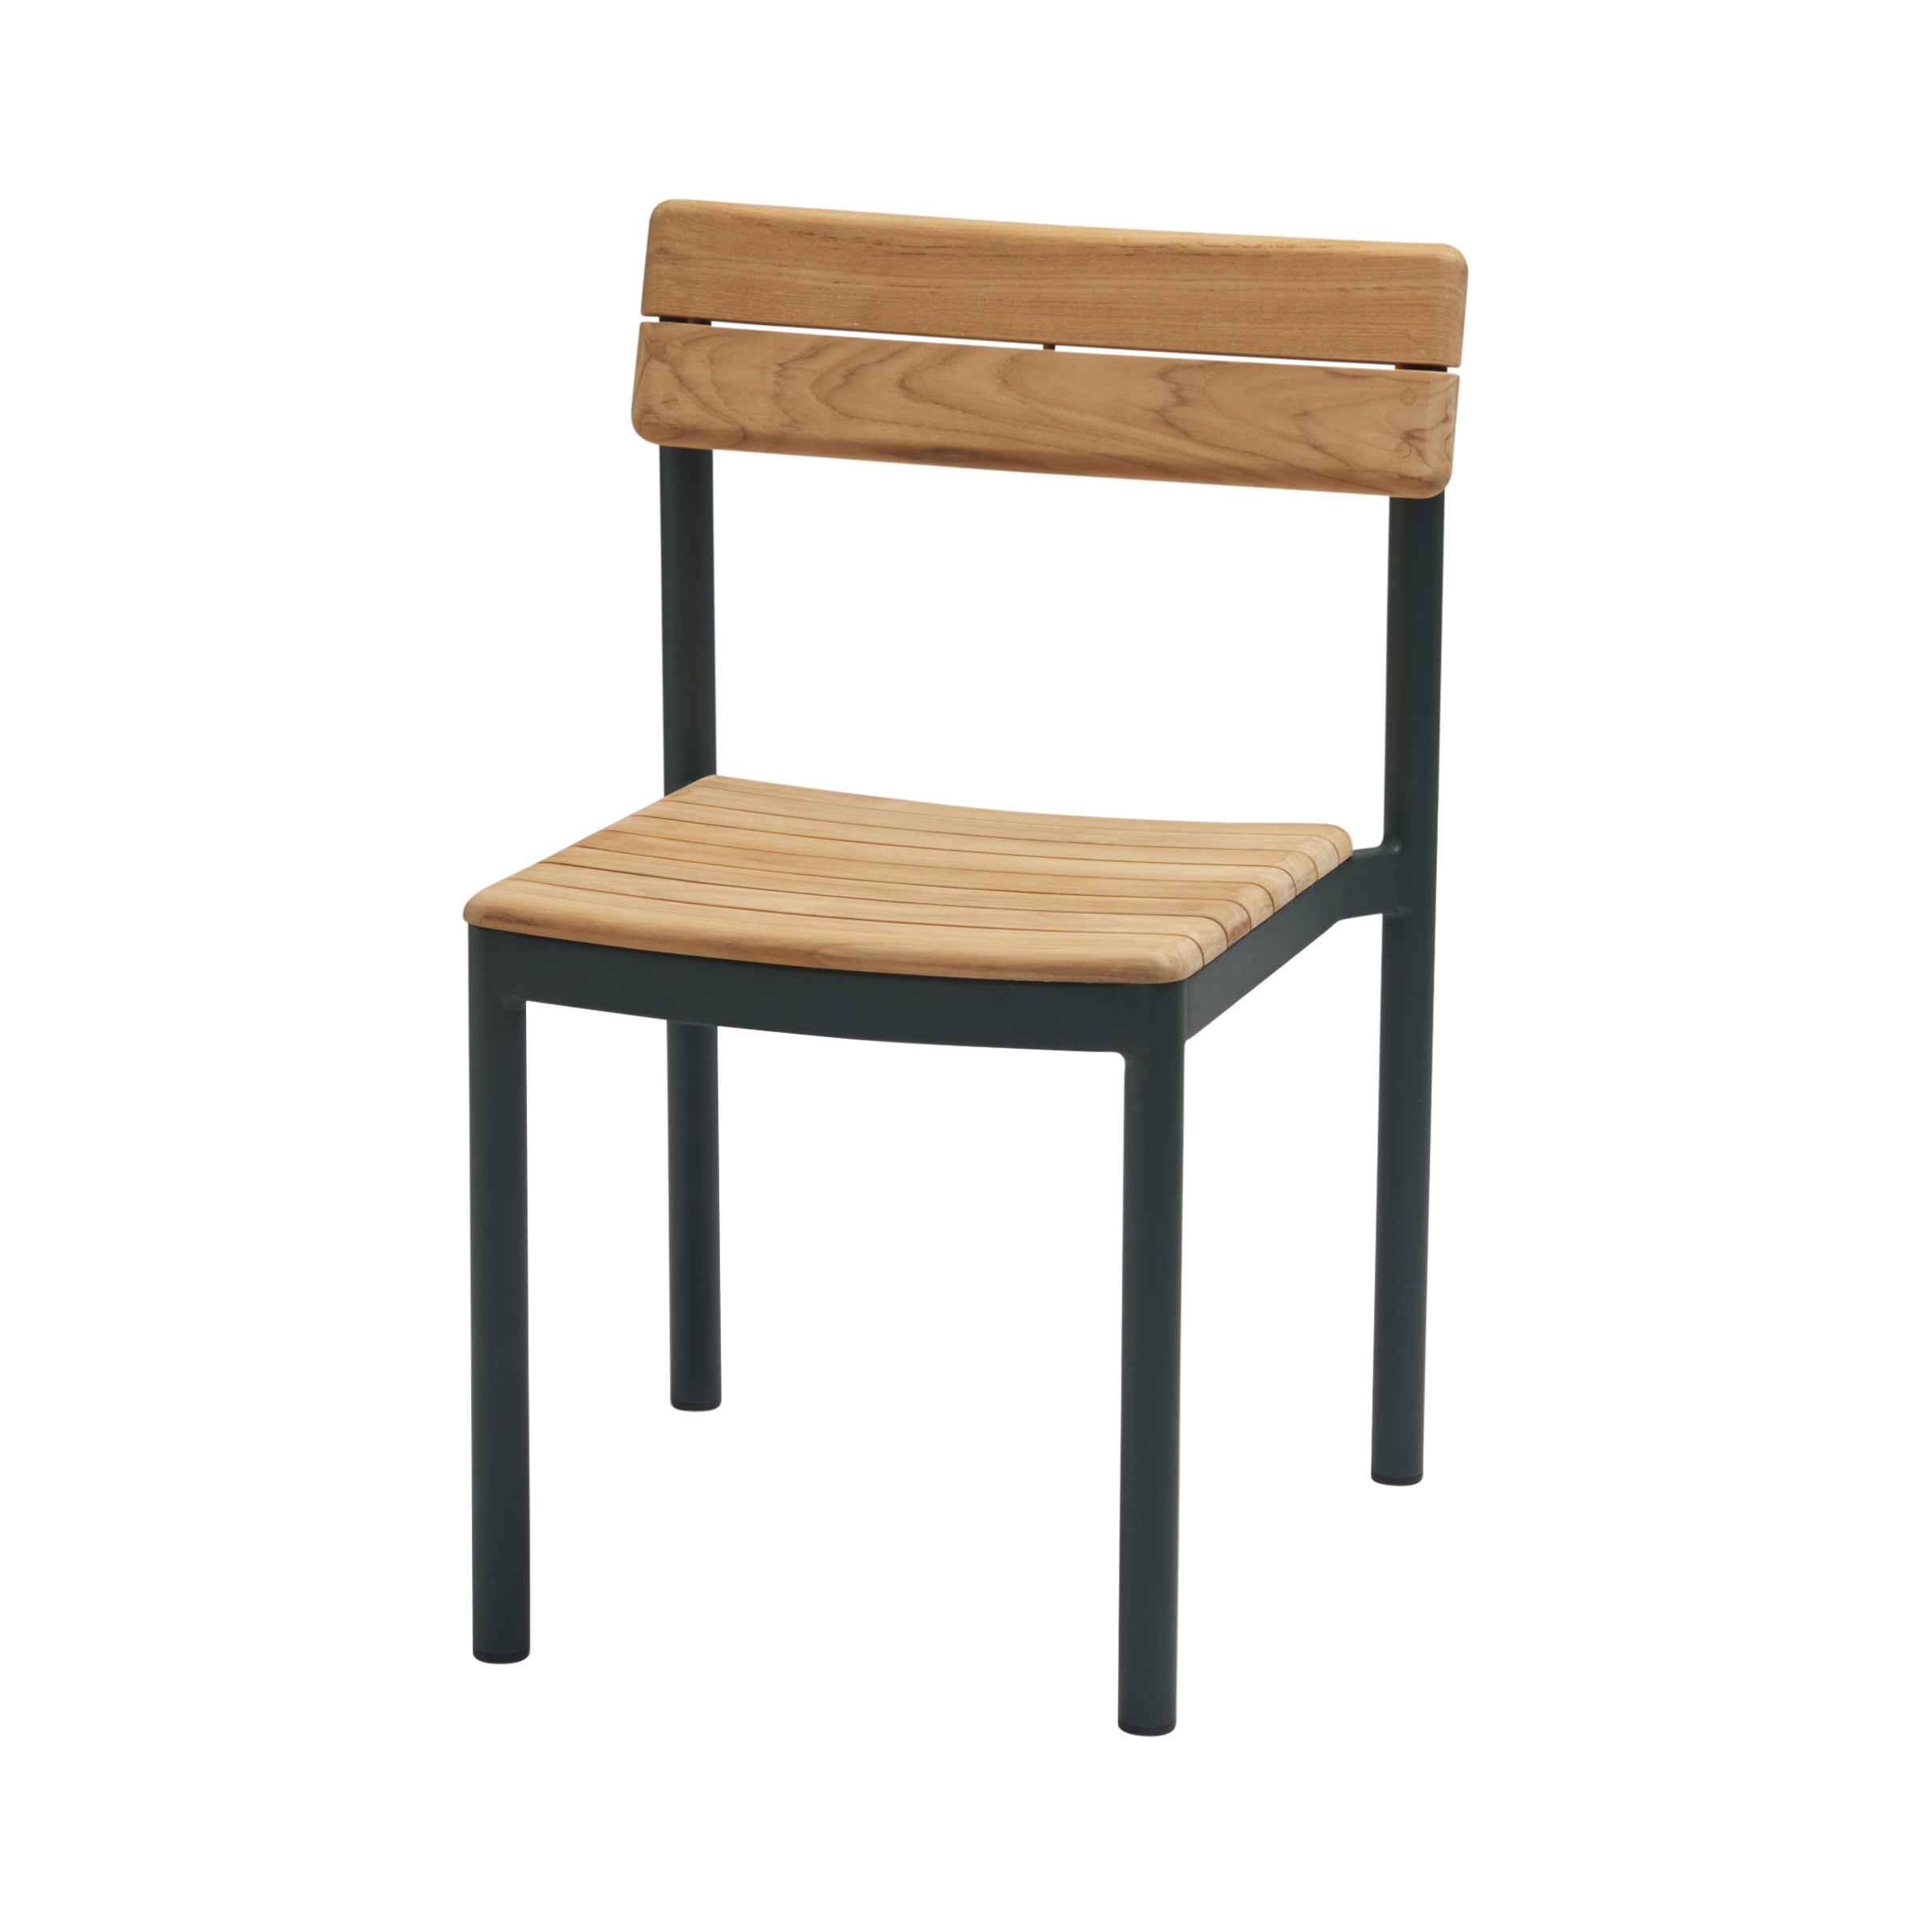 Pelagus Chair: Hunter Green + Without Cushion